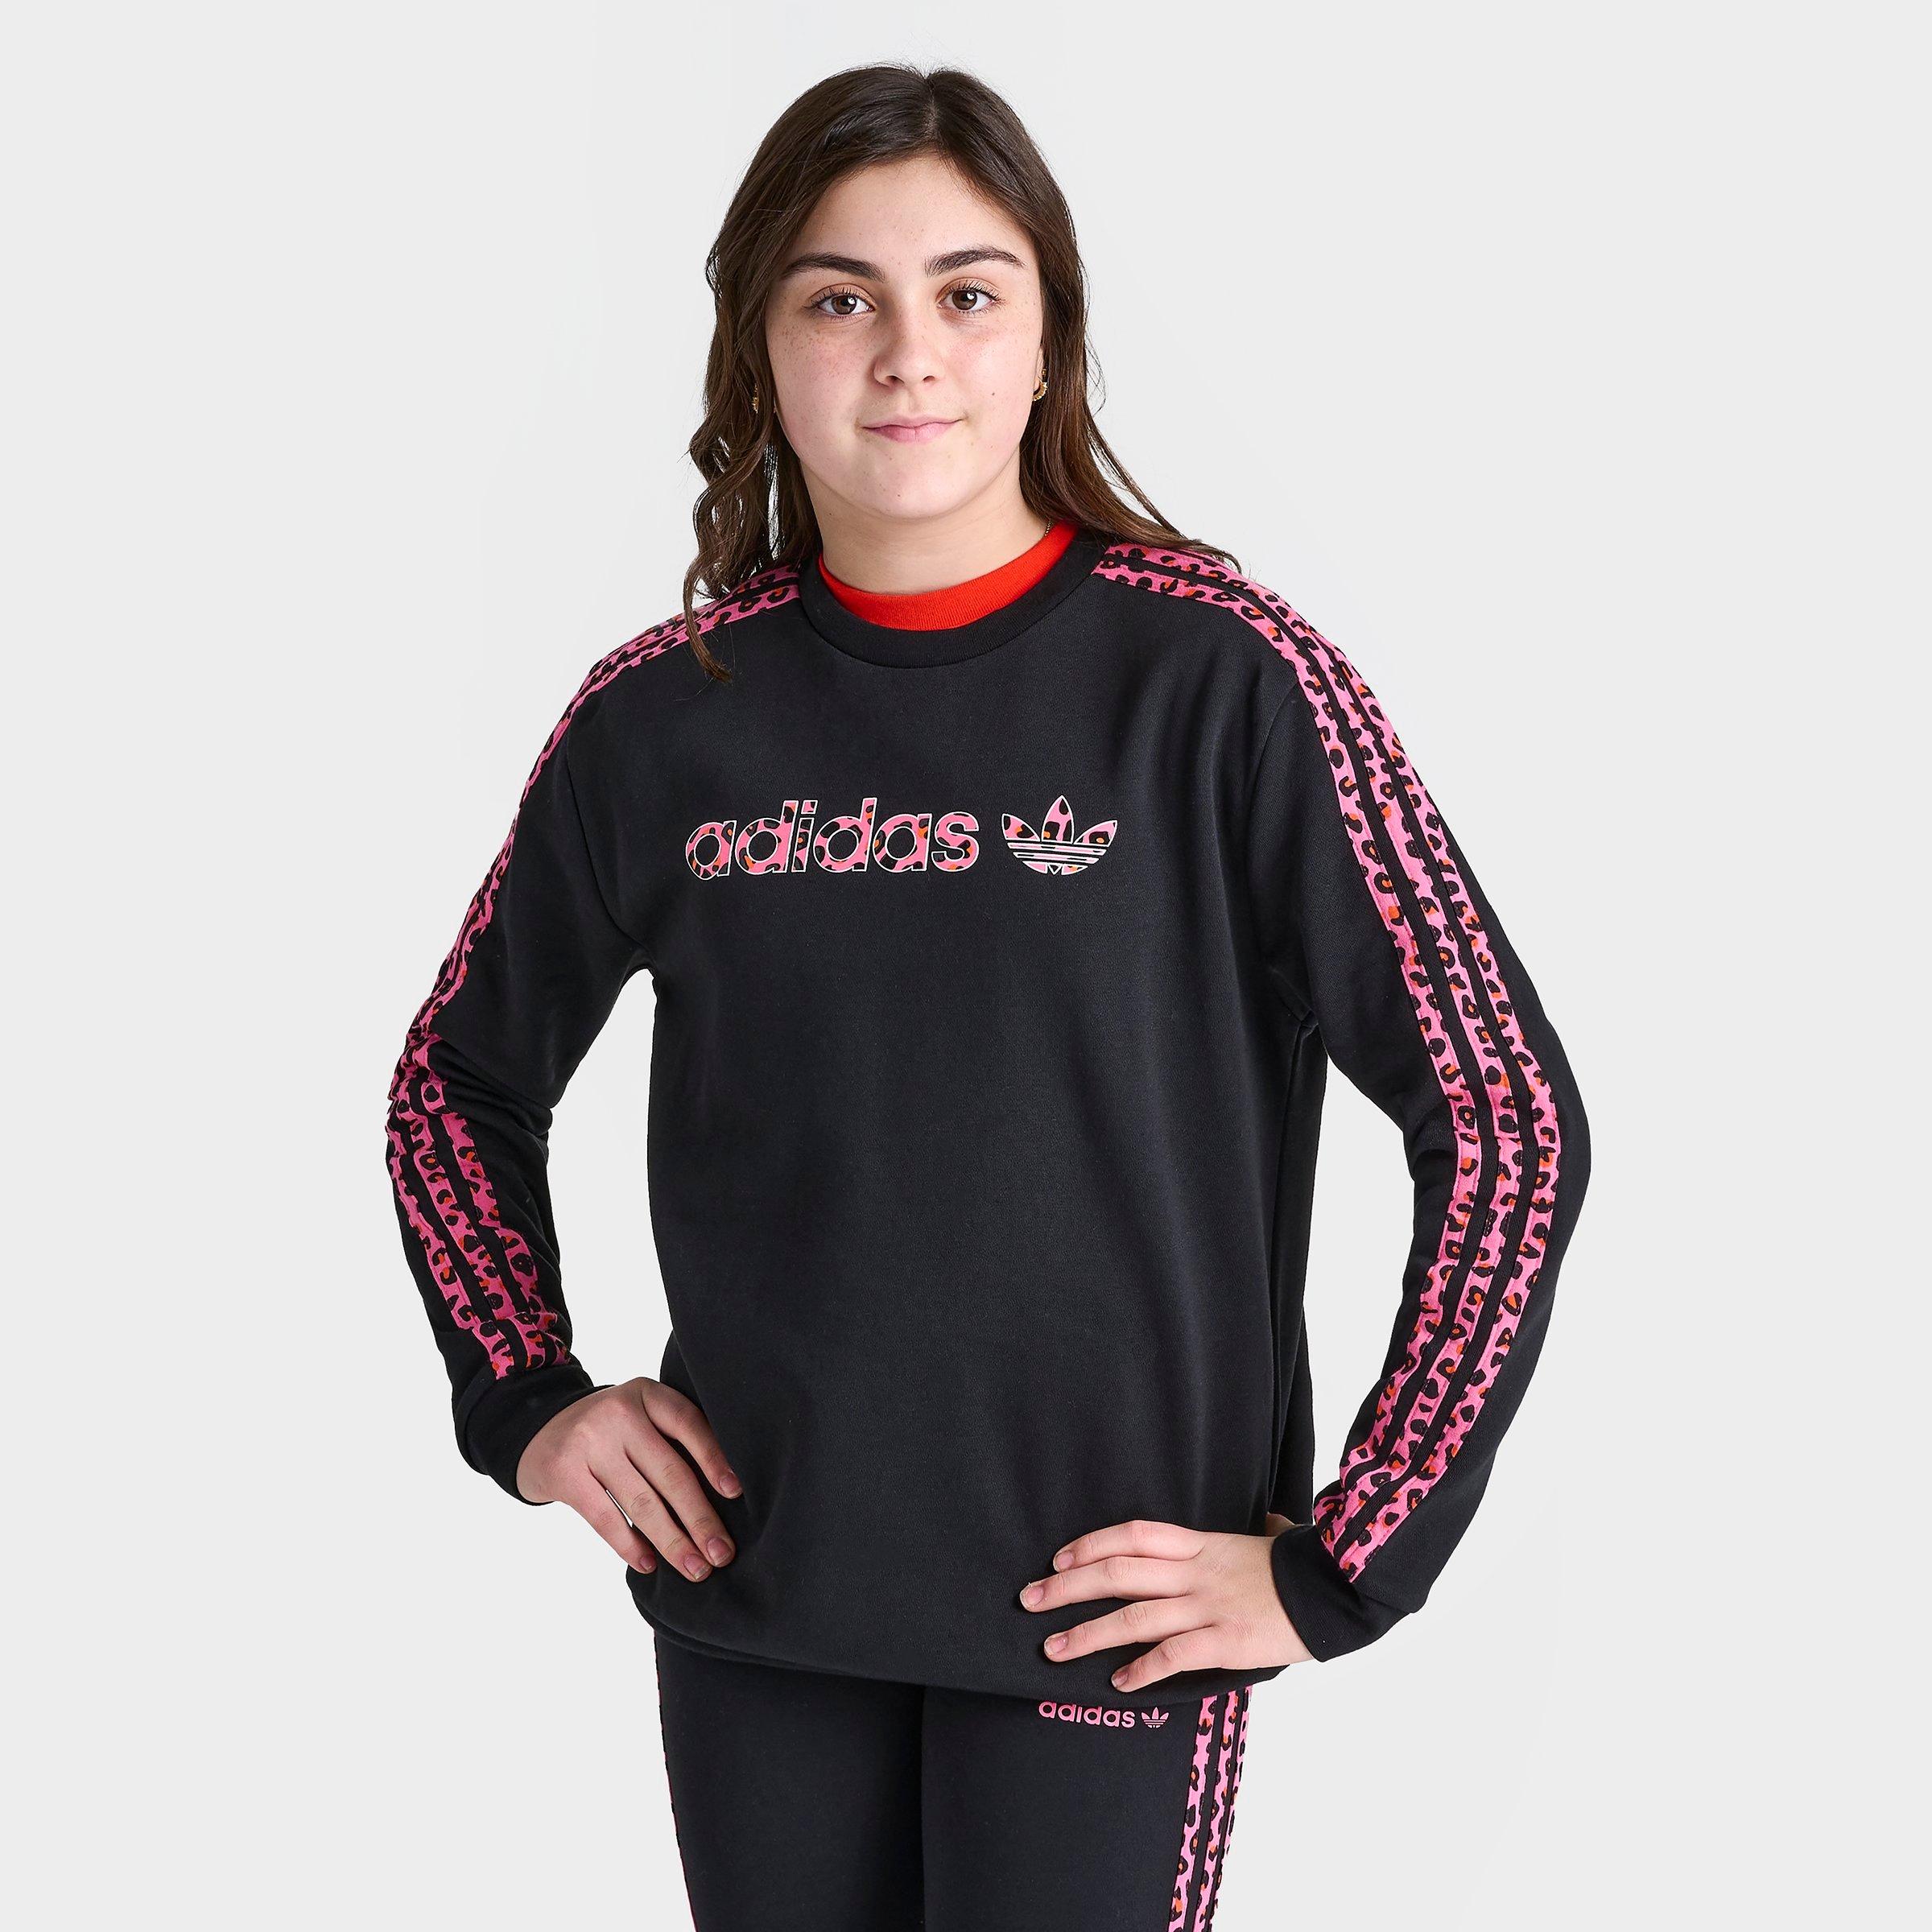 Adidas Originals Kids' Adidas Girls' Originals Leopard Stripes Sweatshirt In Black/pink